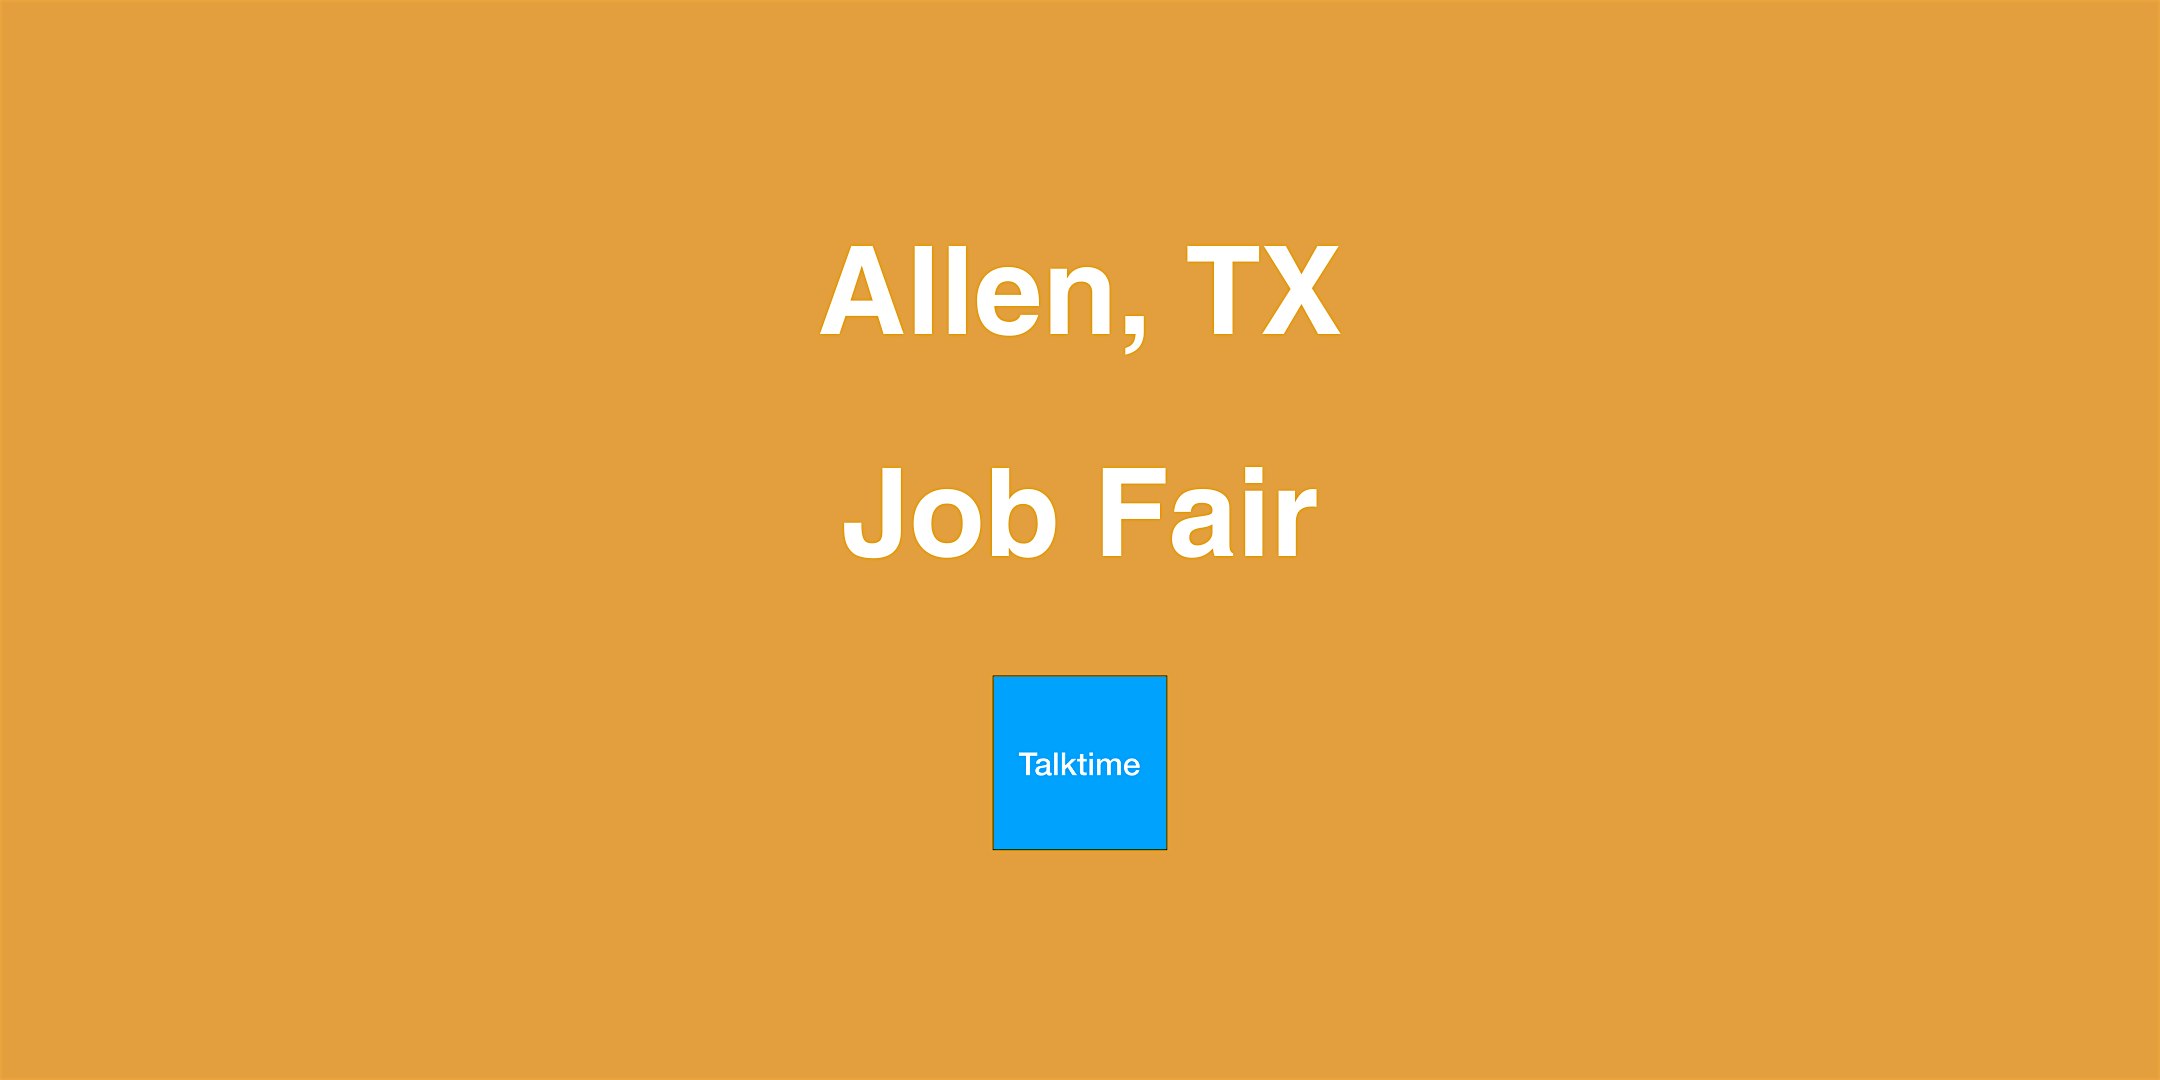 Job Fair - Allen